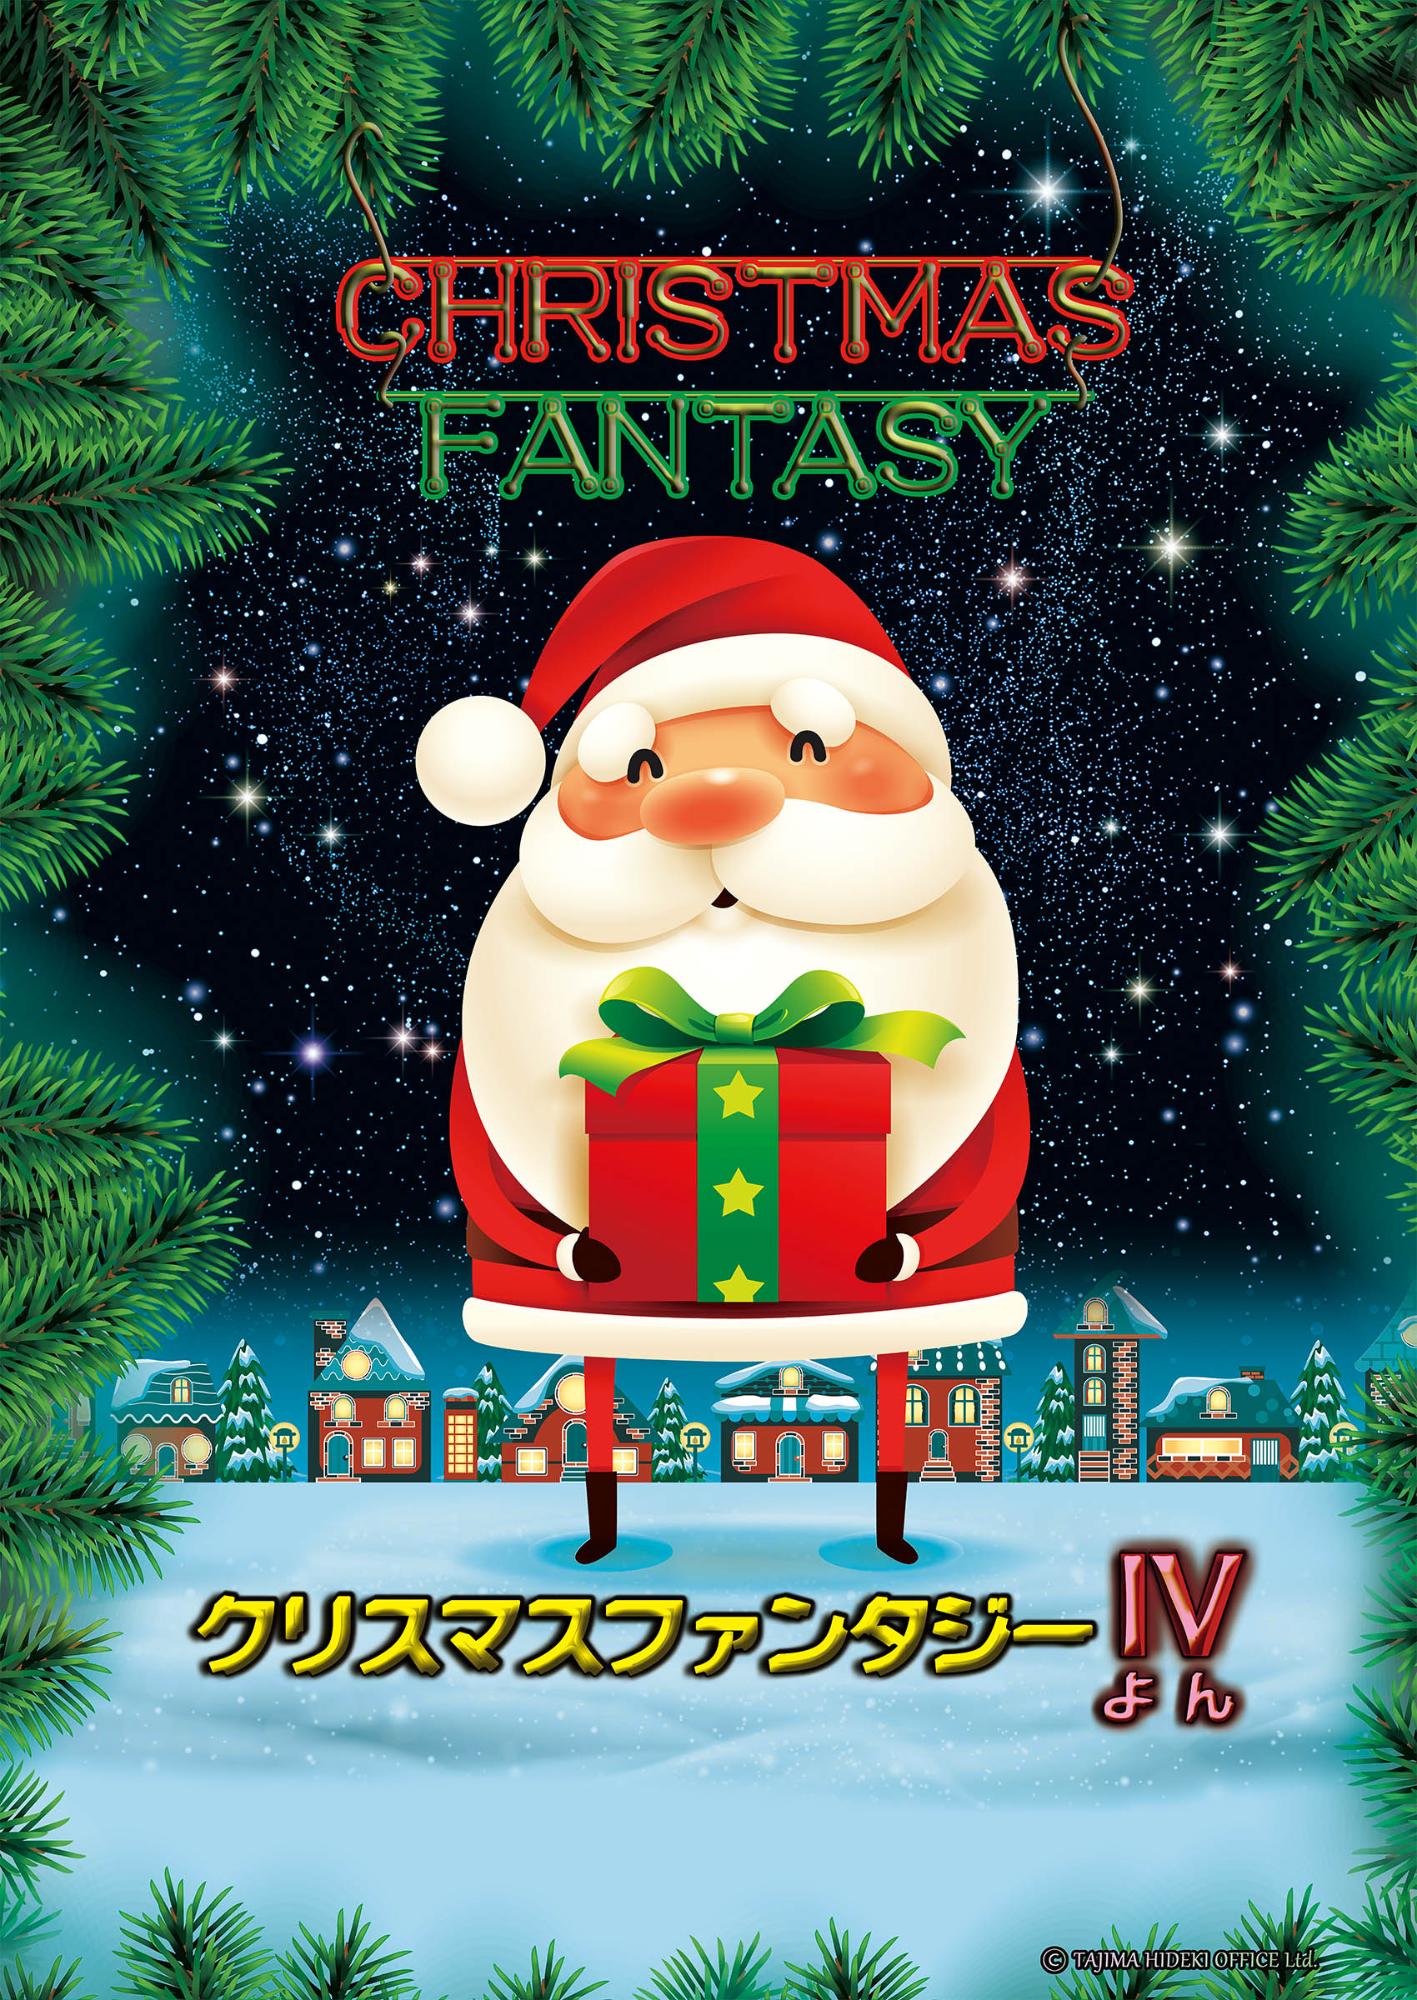 「クリスマスファンタジー4」ポスター。冬の星空と町並みを背景にしたサンタクロースのイラスト。